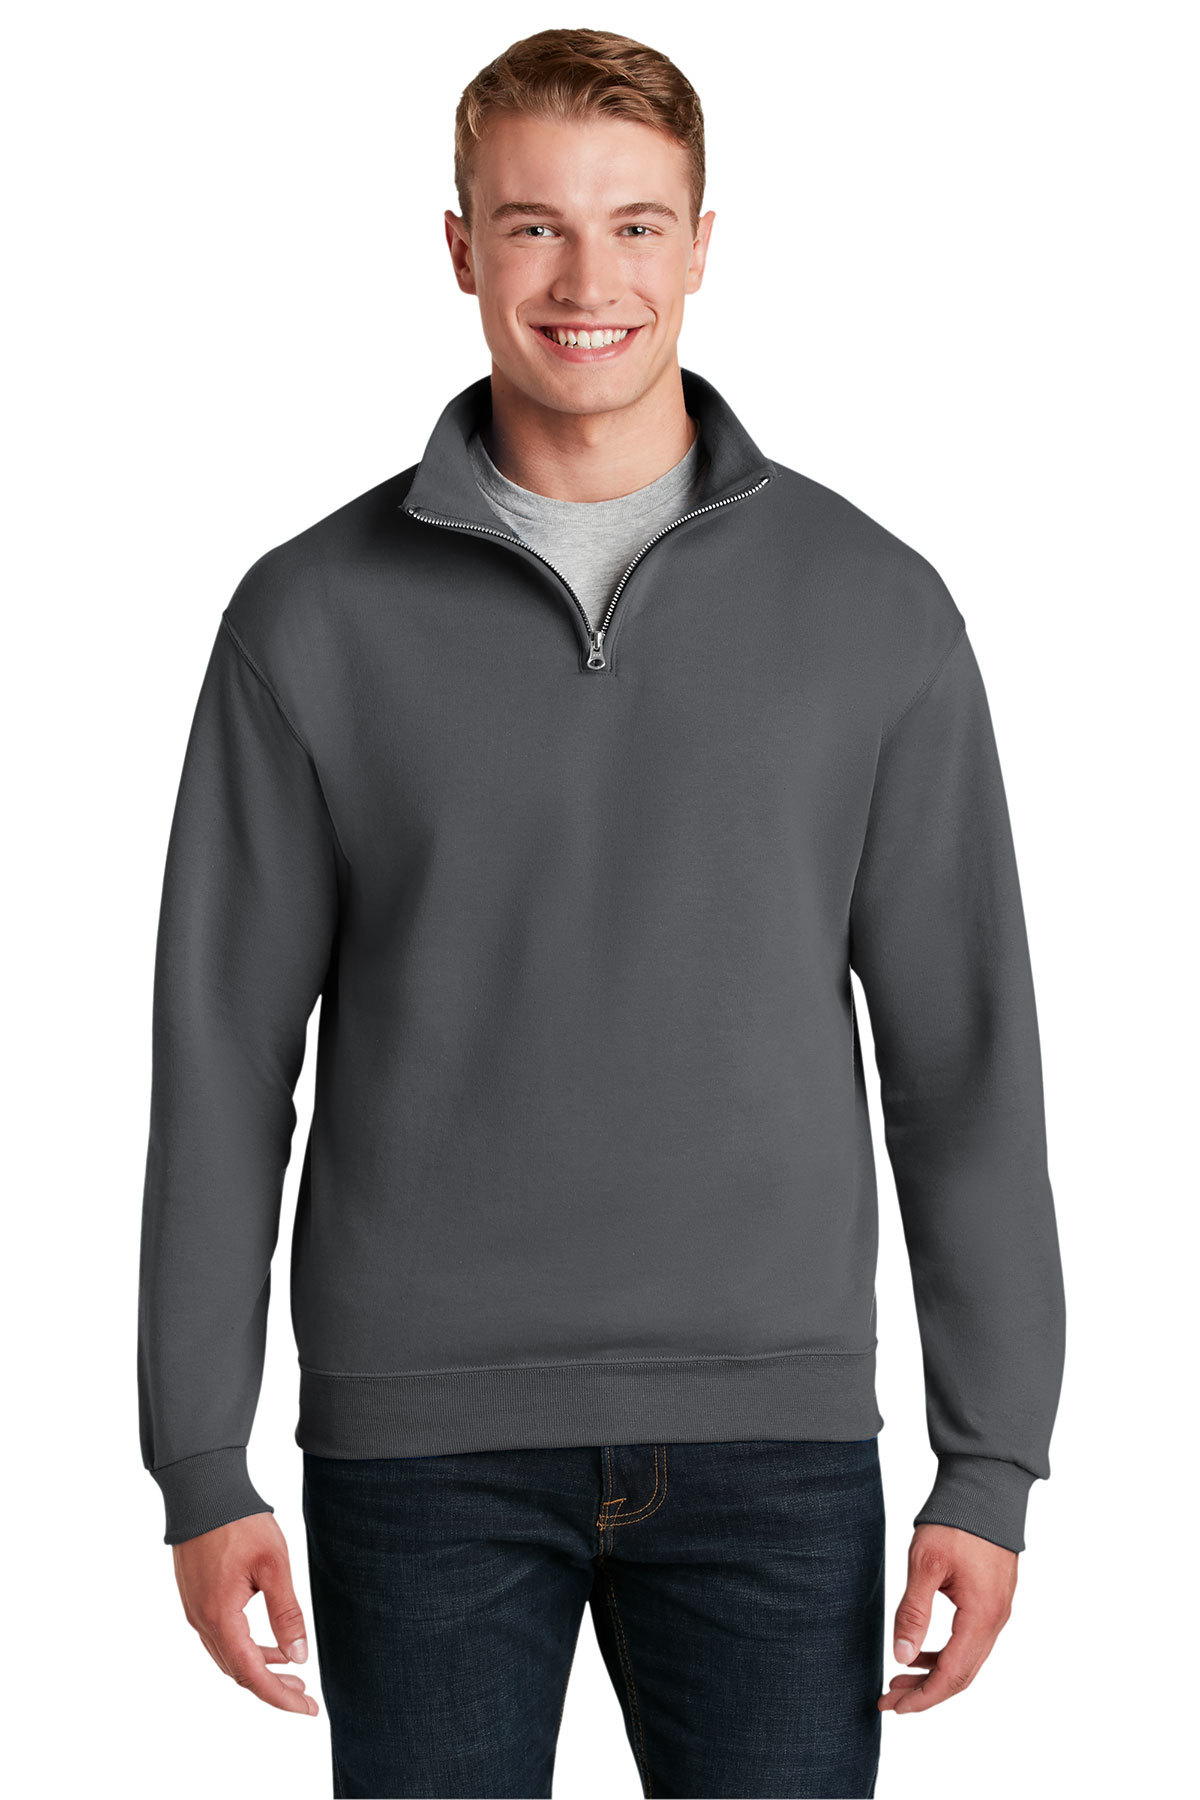 Jerzees - NuBlend 1/4-Zip Cadet Collar Sweatshirt | Product | Online ...